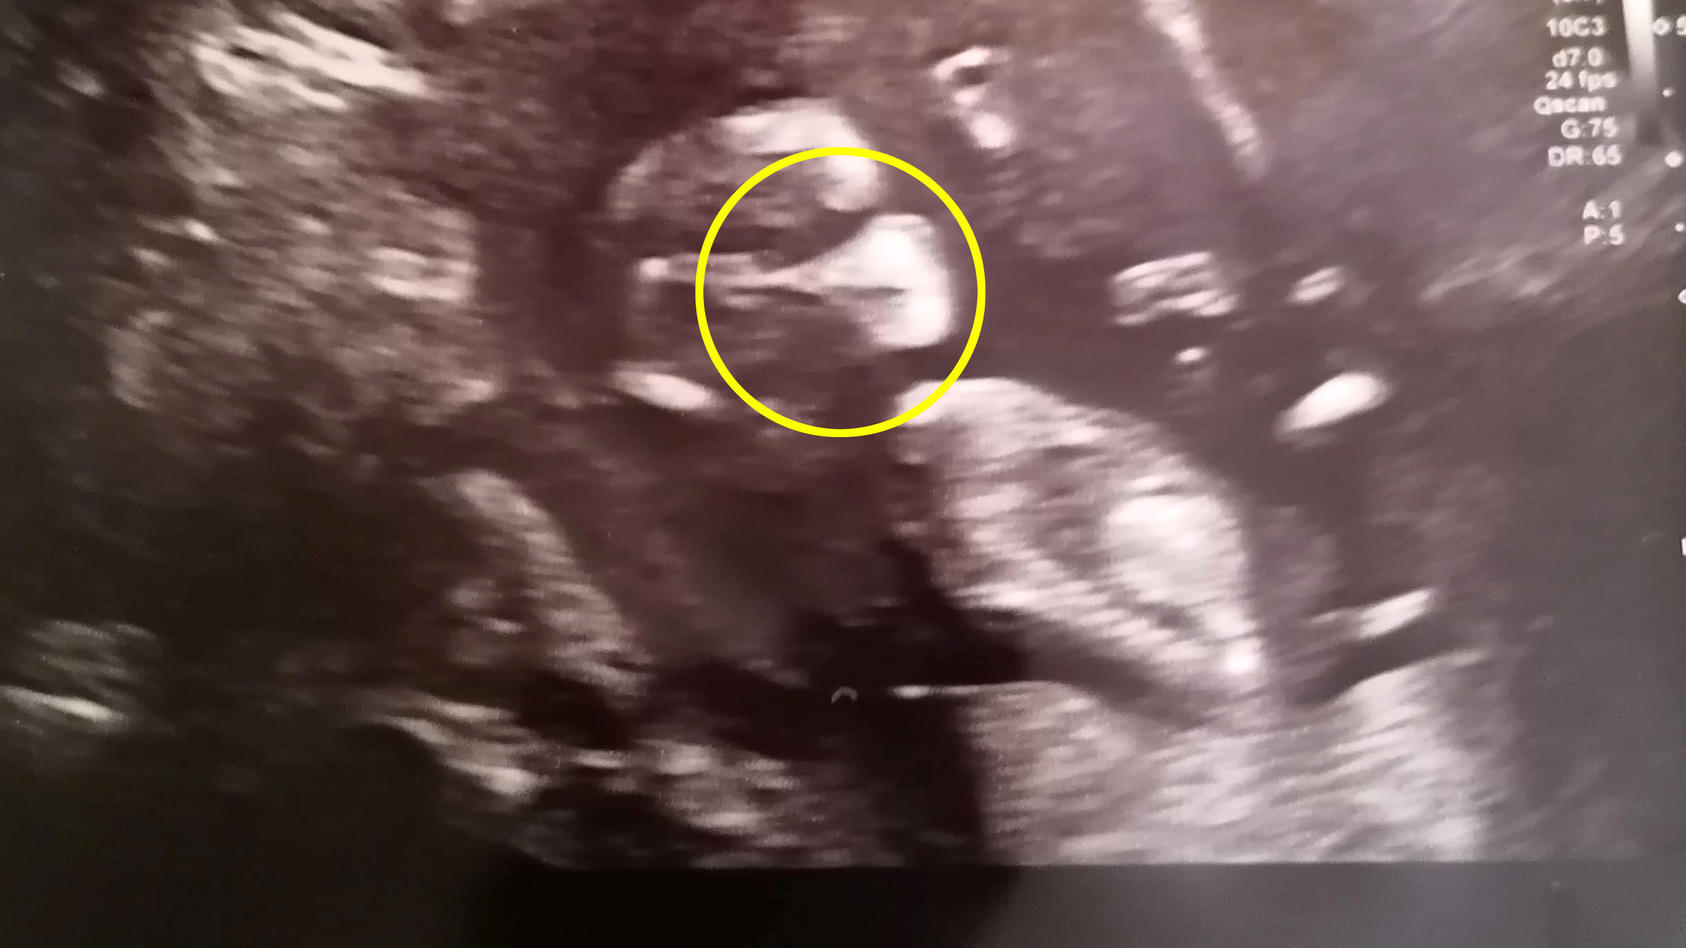 Samantha Spicers Baby scheint auf einem Ultraschallbild eine Maske zu tragen.